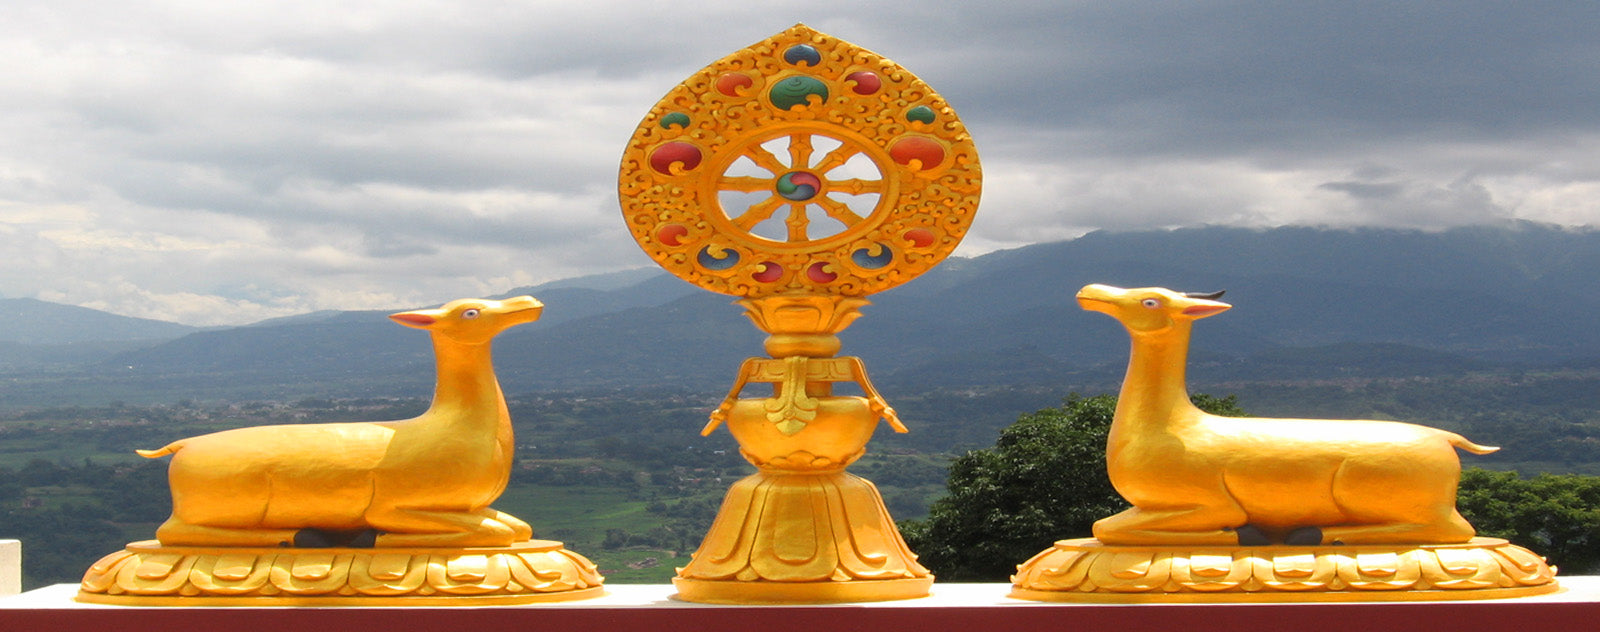 La roue du Dharma : Symbole, histoire, signification